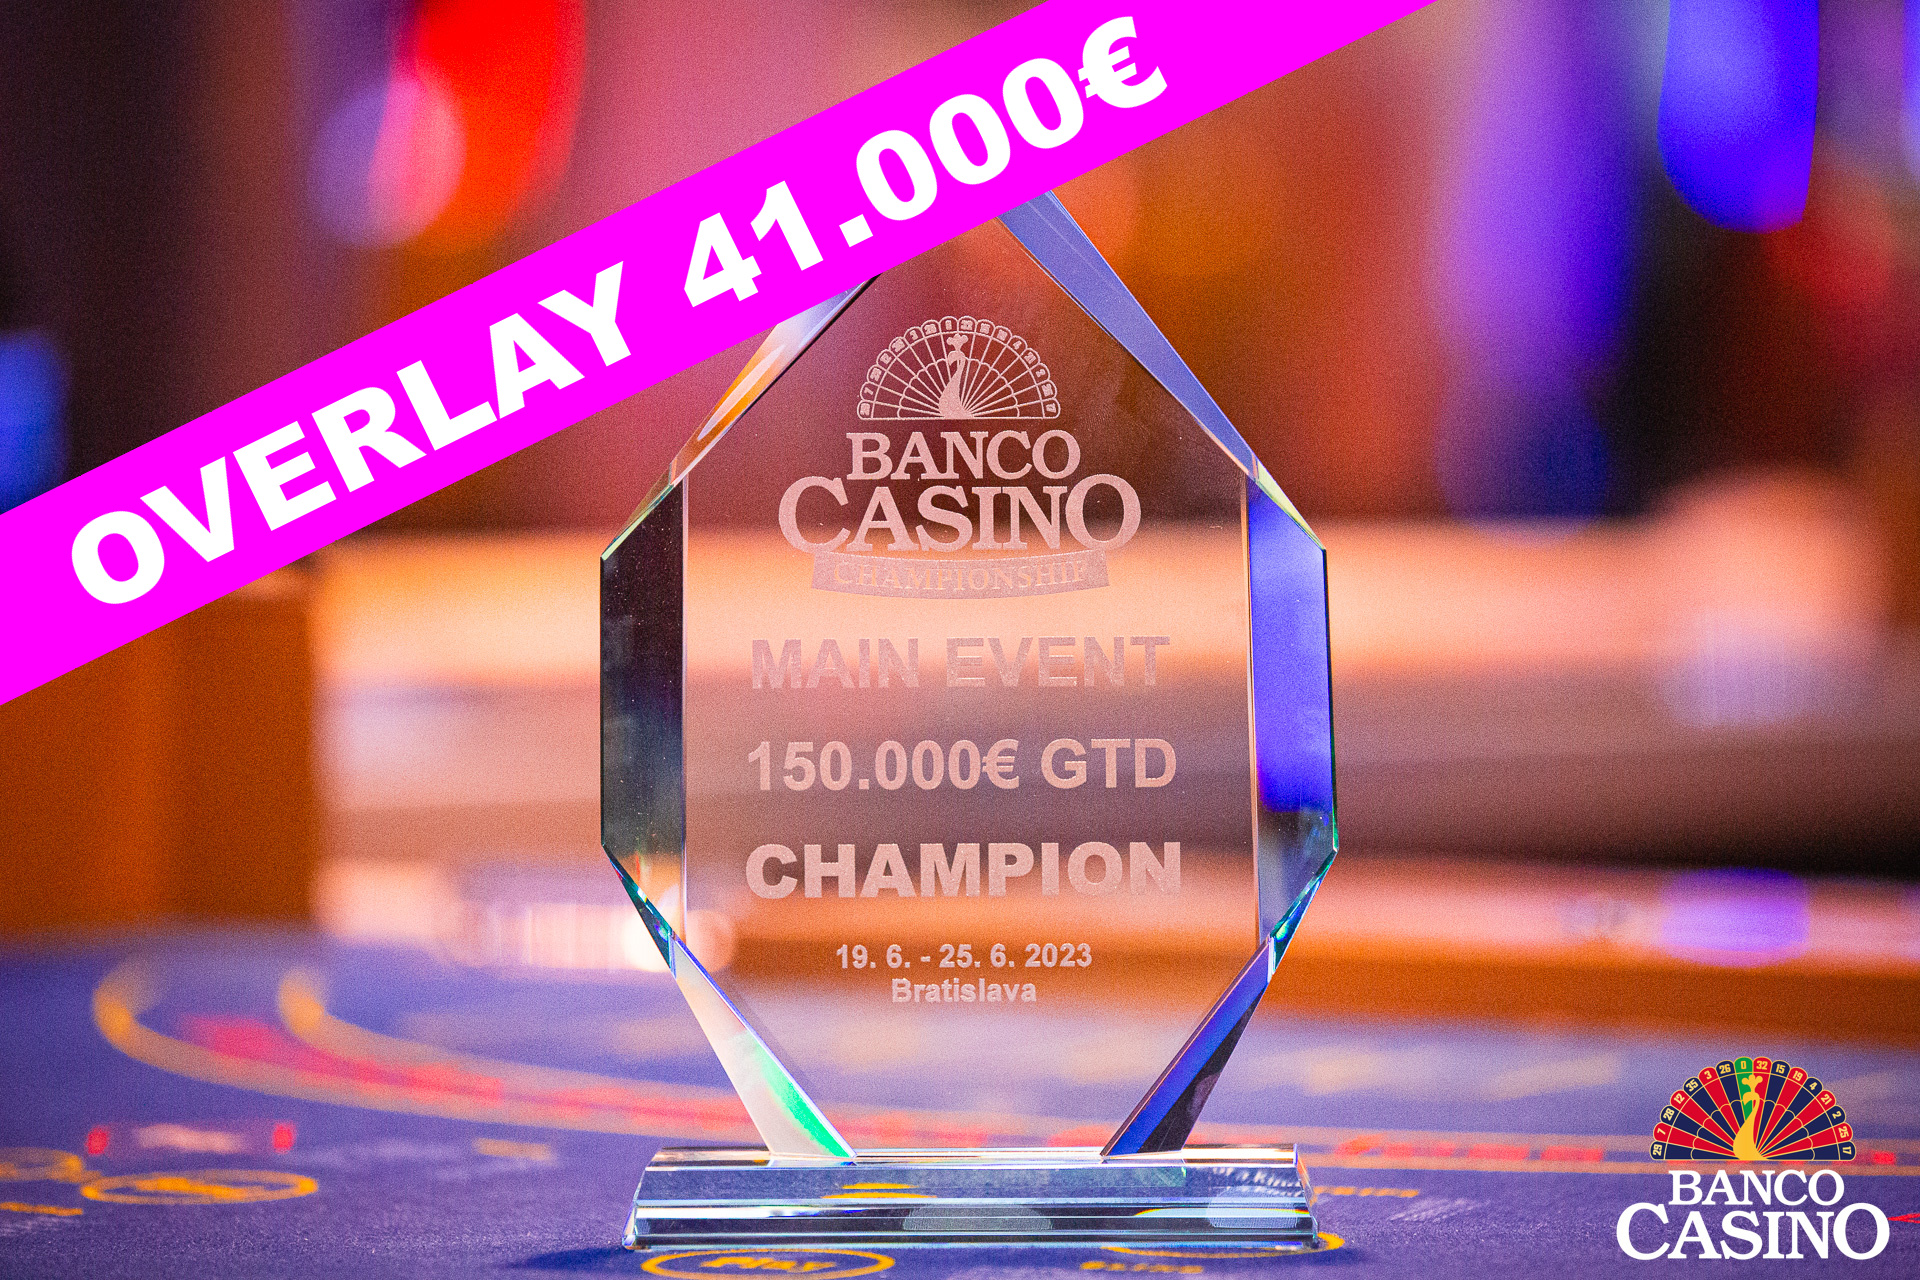 Banco Casino Championship € 150.000 GTD: Vor dem letzten Hyperturbo fehlen € 41.000 in der Garantie!